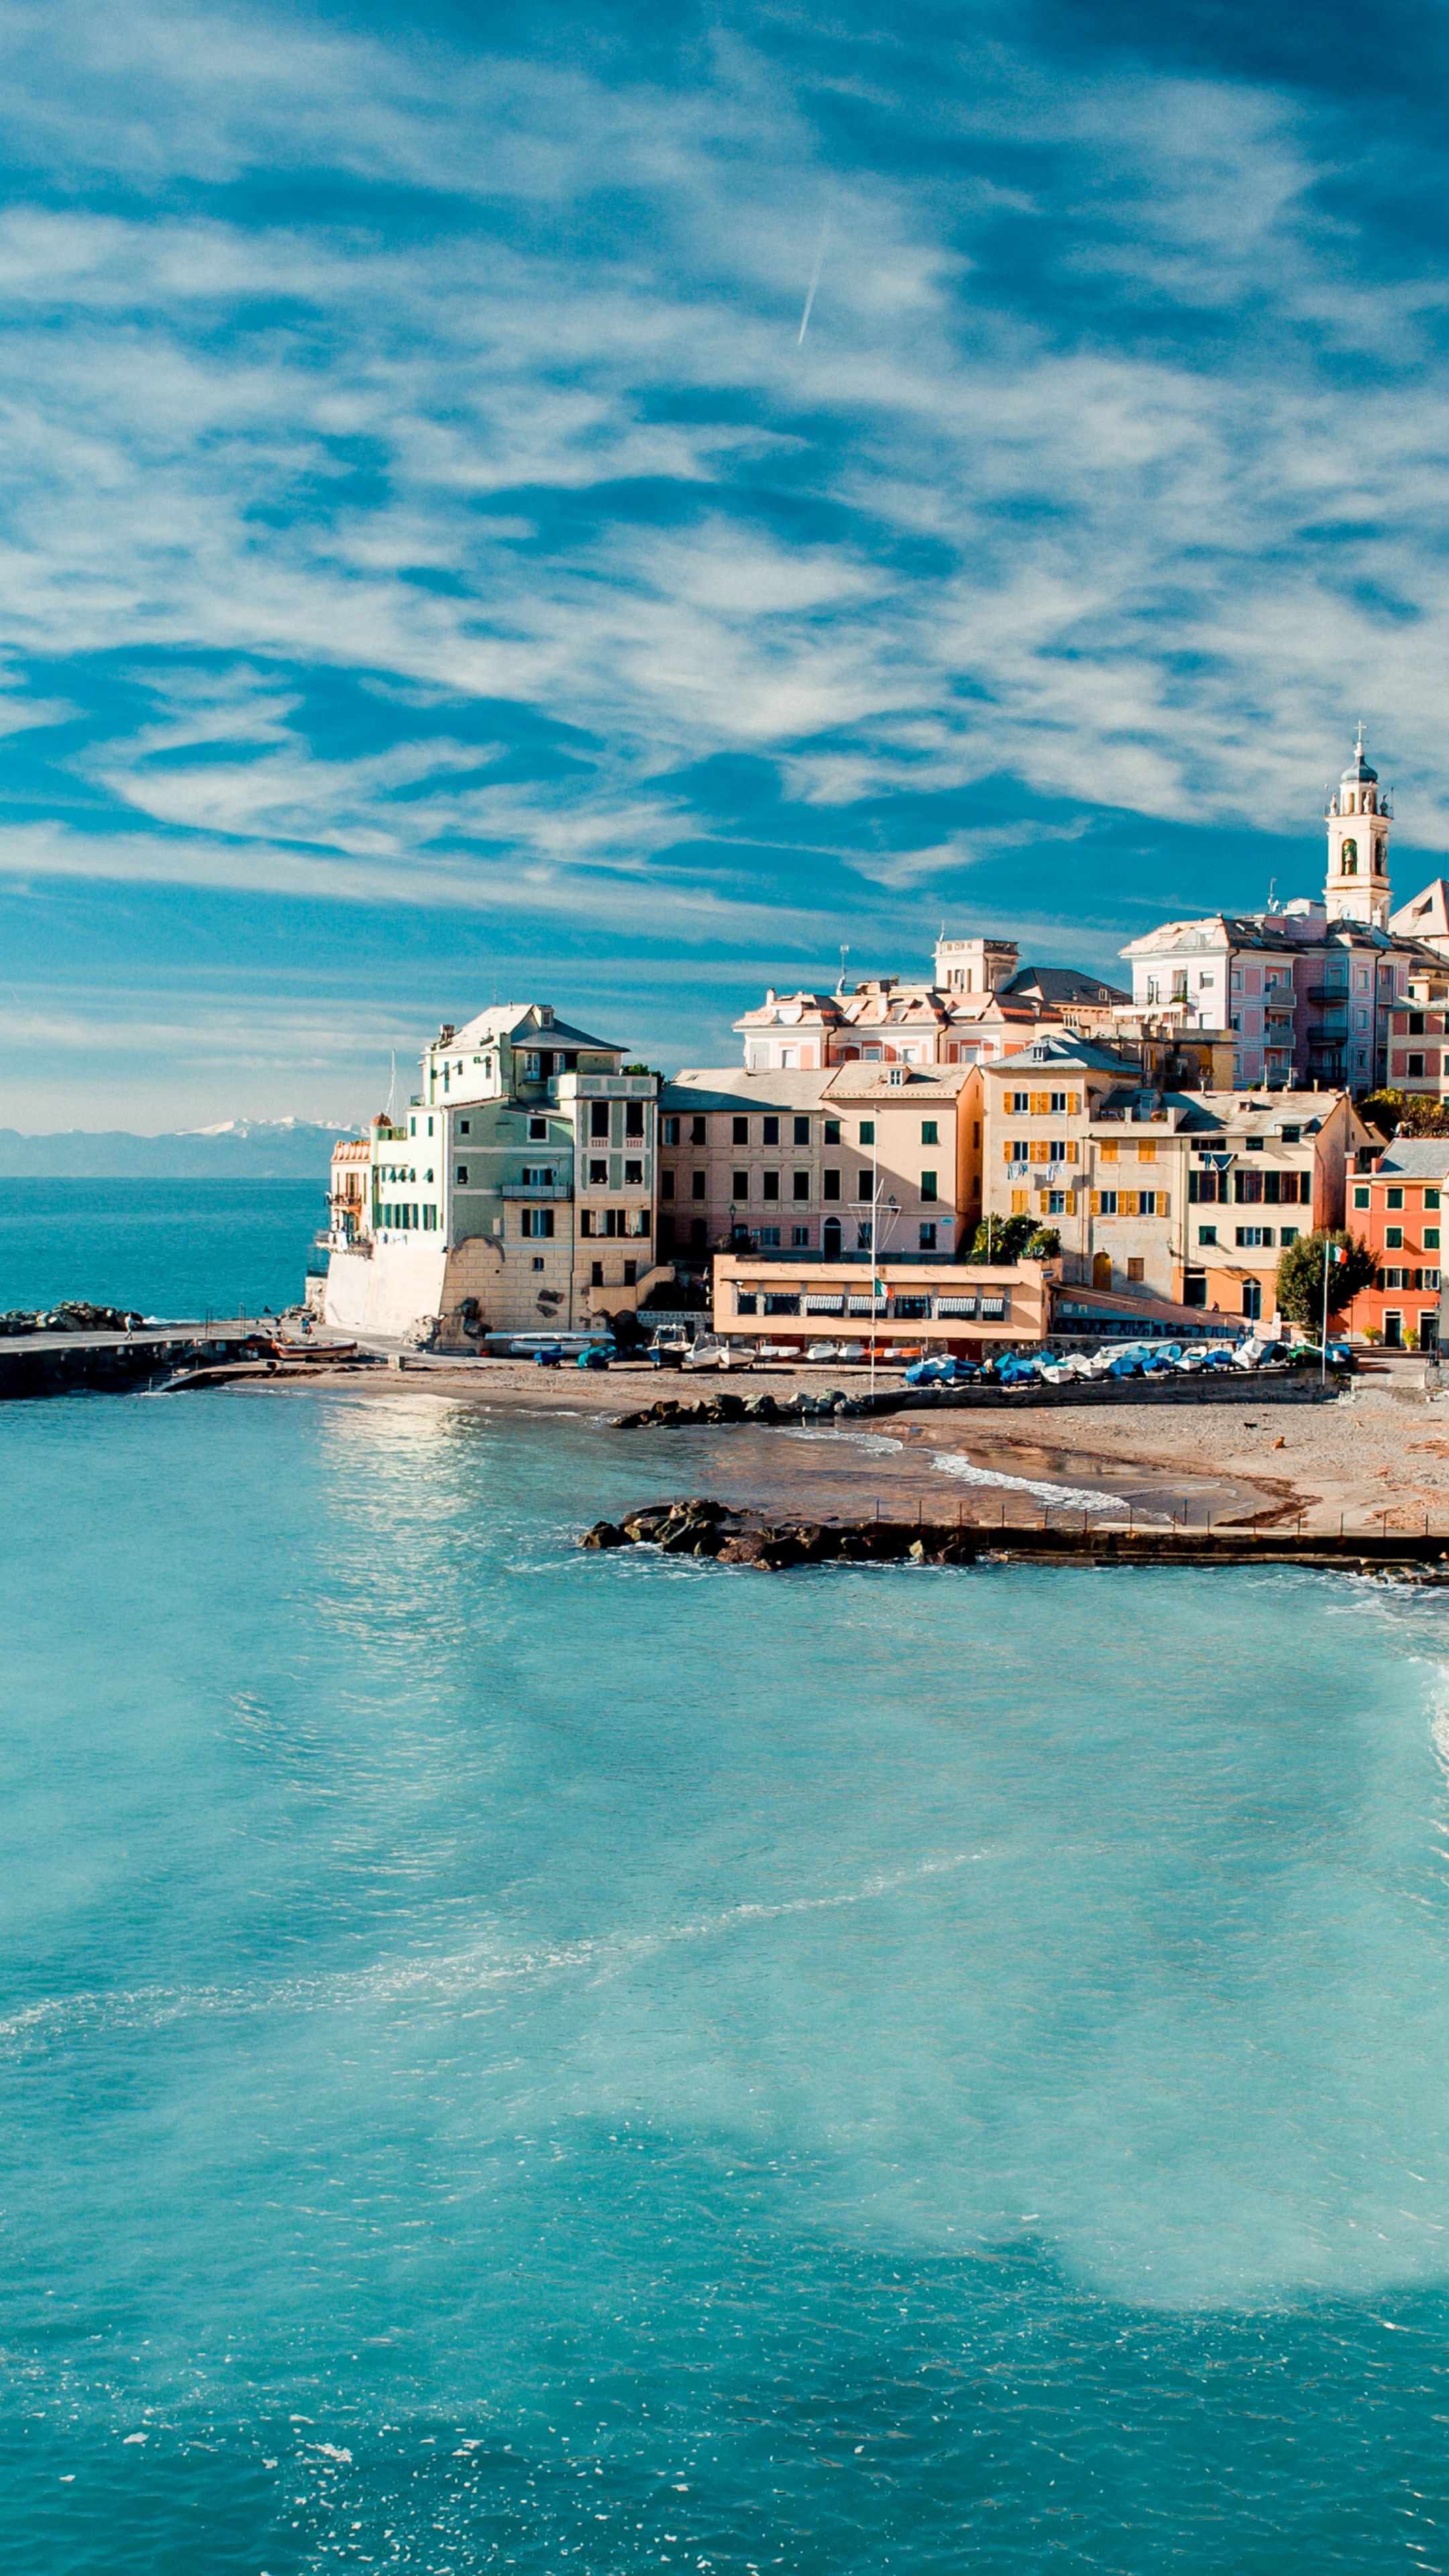 A city on the beach with a blue sky - Italy